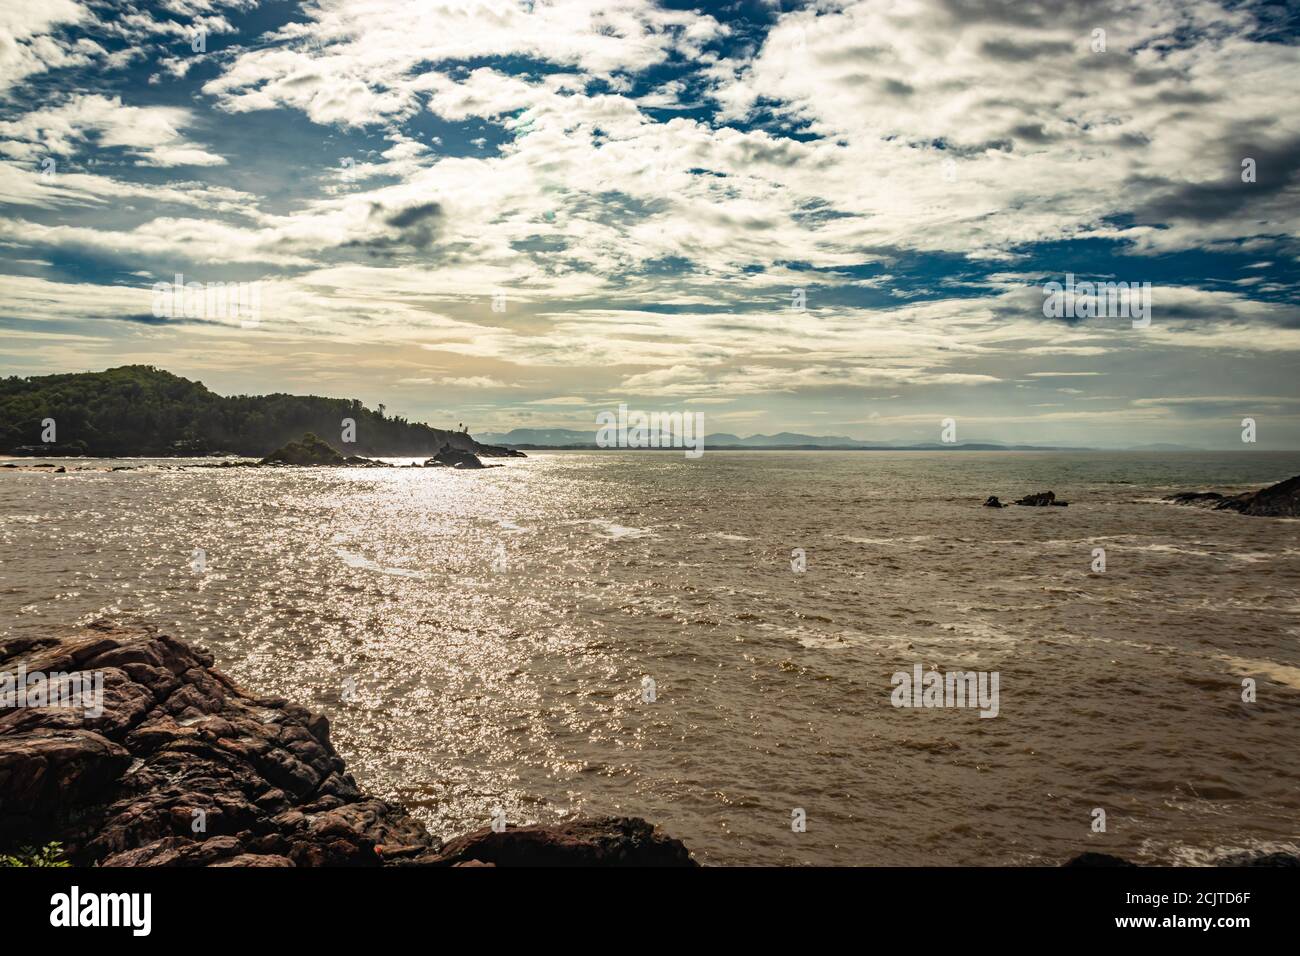 spiaggia rocciosa di mare con onde che si infrangono al mattino da un'immagine ad angolo piatto è presa alla spiaggia om gokarna karnataka india. è una delle migliori spiagge di gokarna Foto Stock